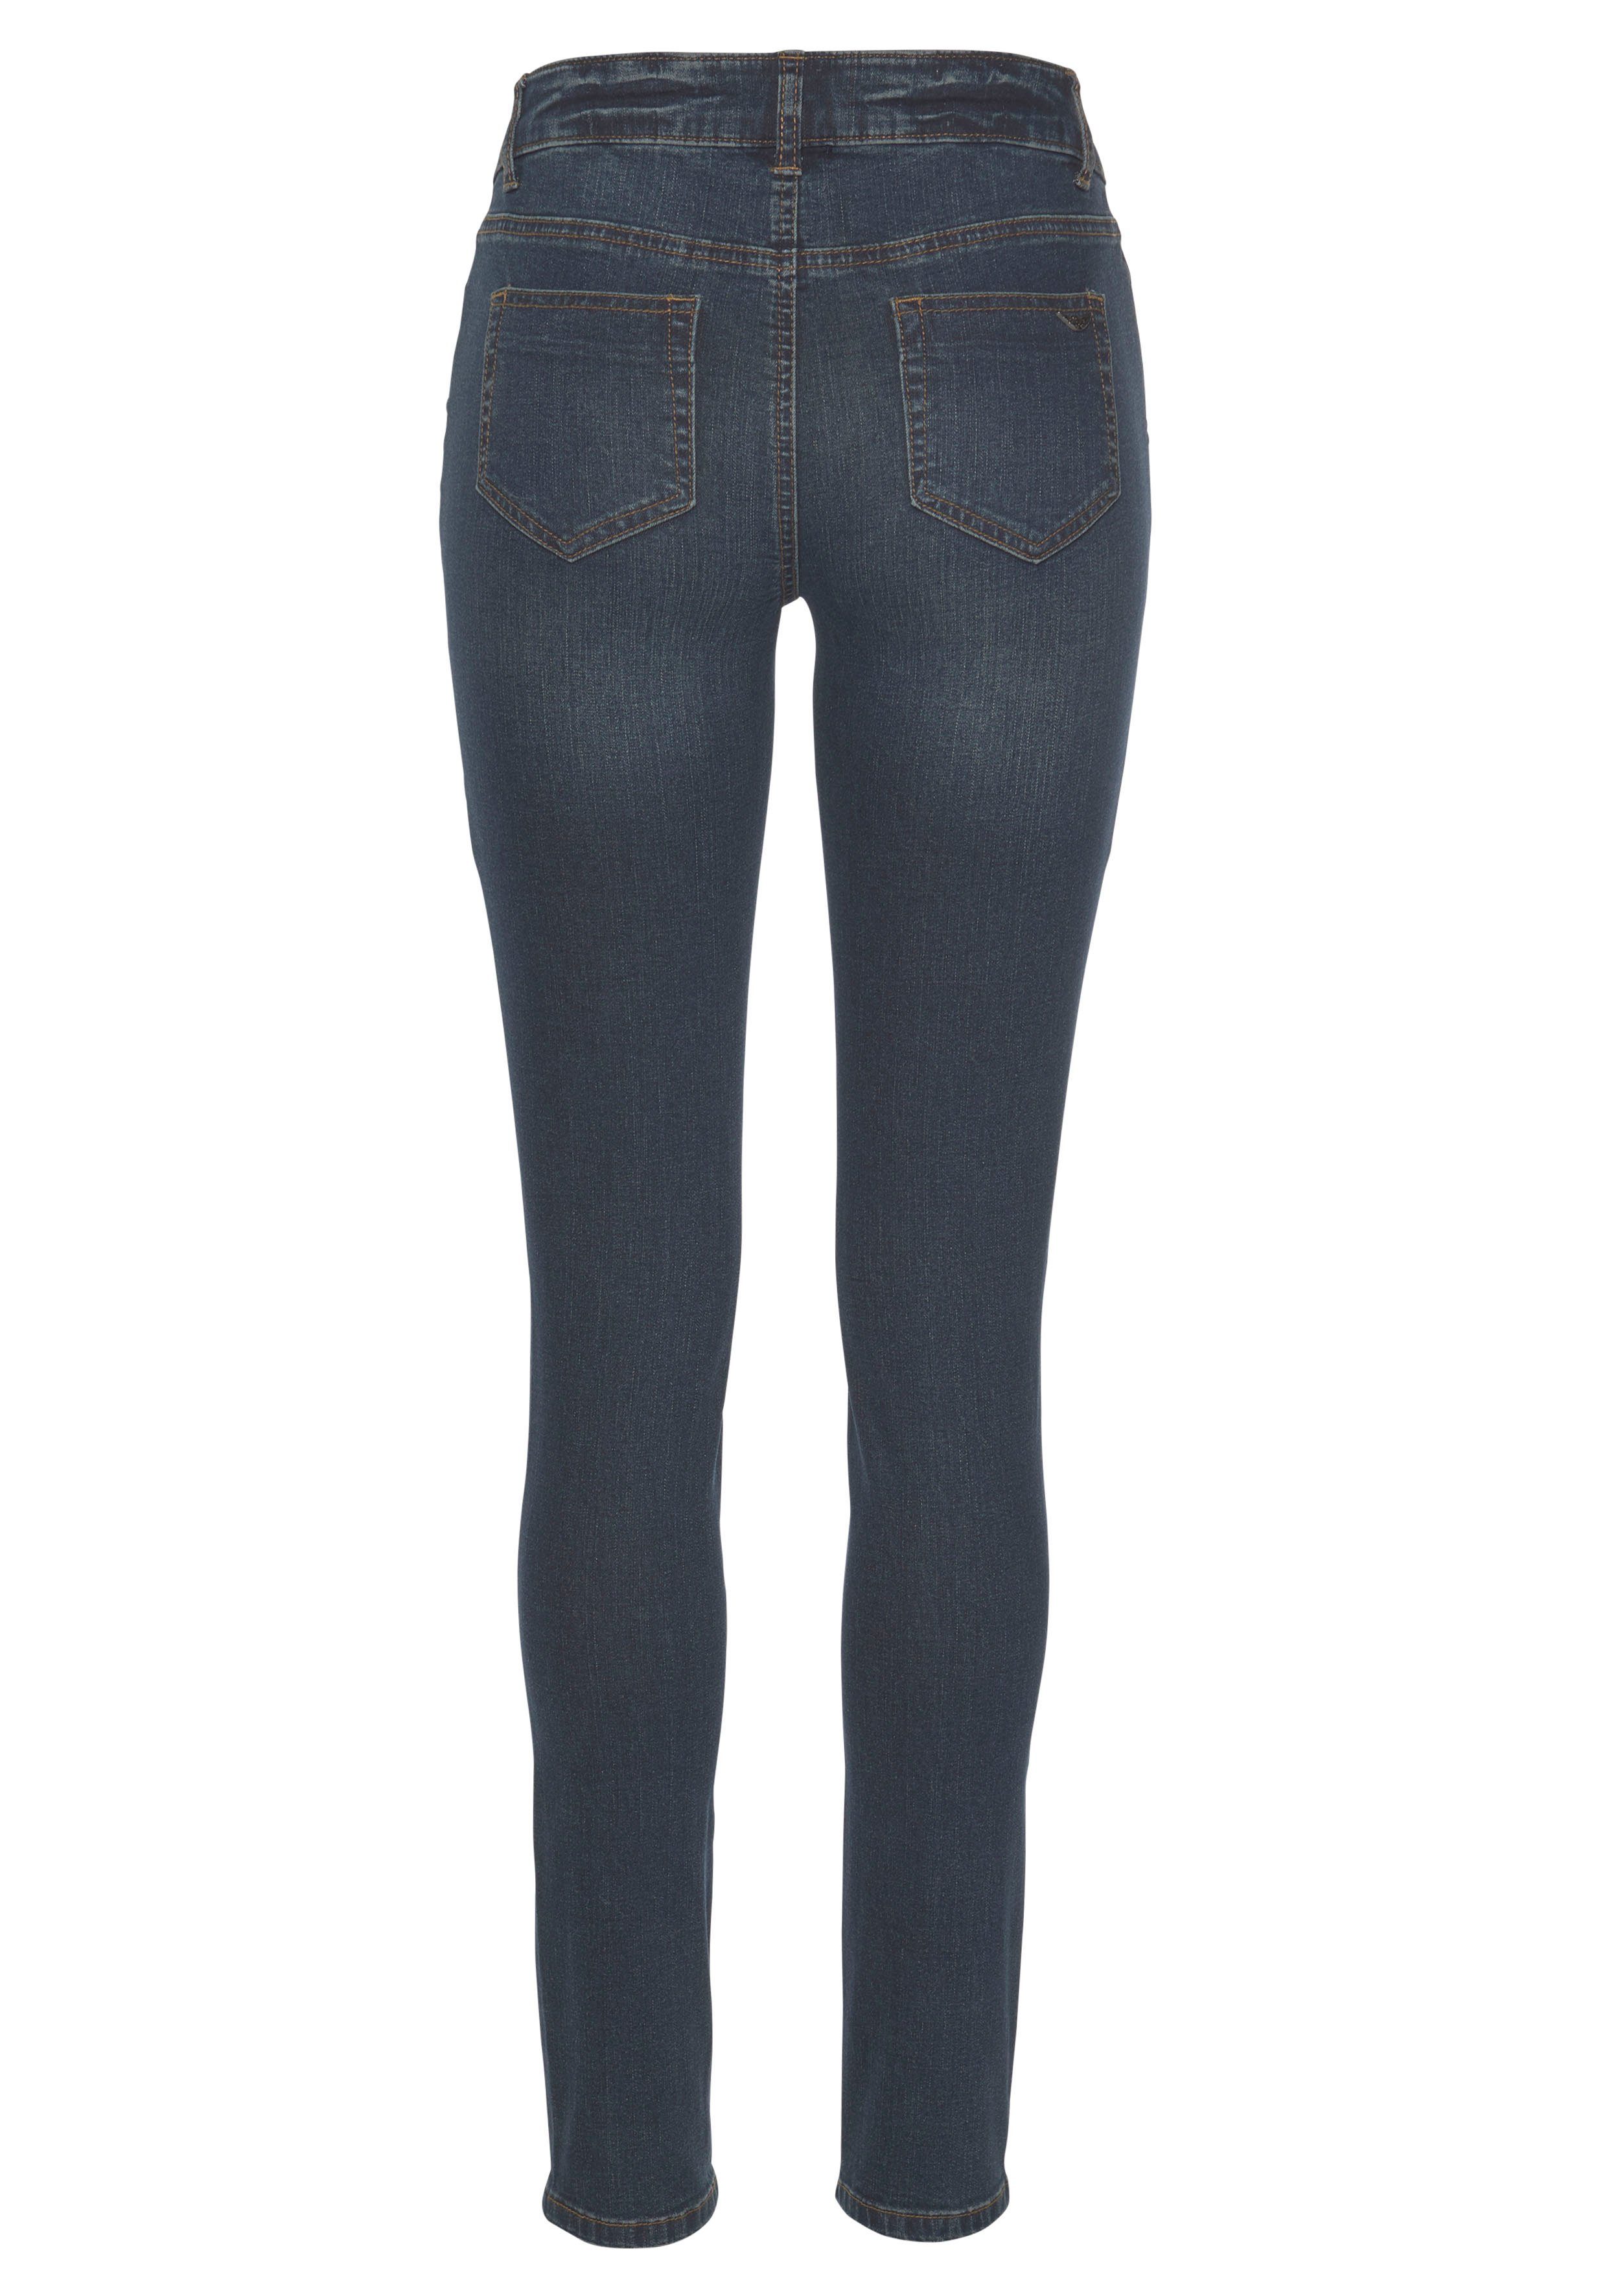 Arizona Skinny-fit-Jeans mit Keileinsätzen Low darkblue-used Waist